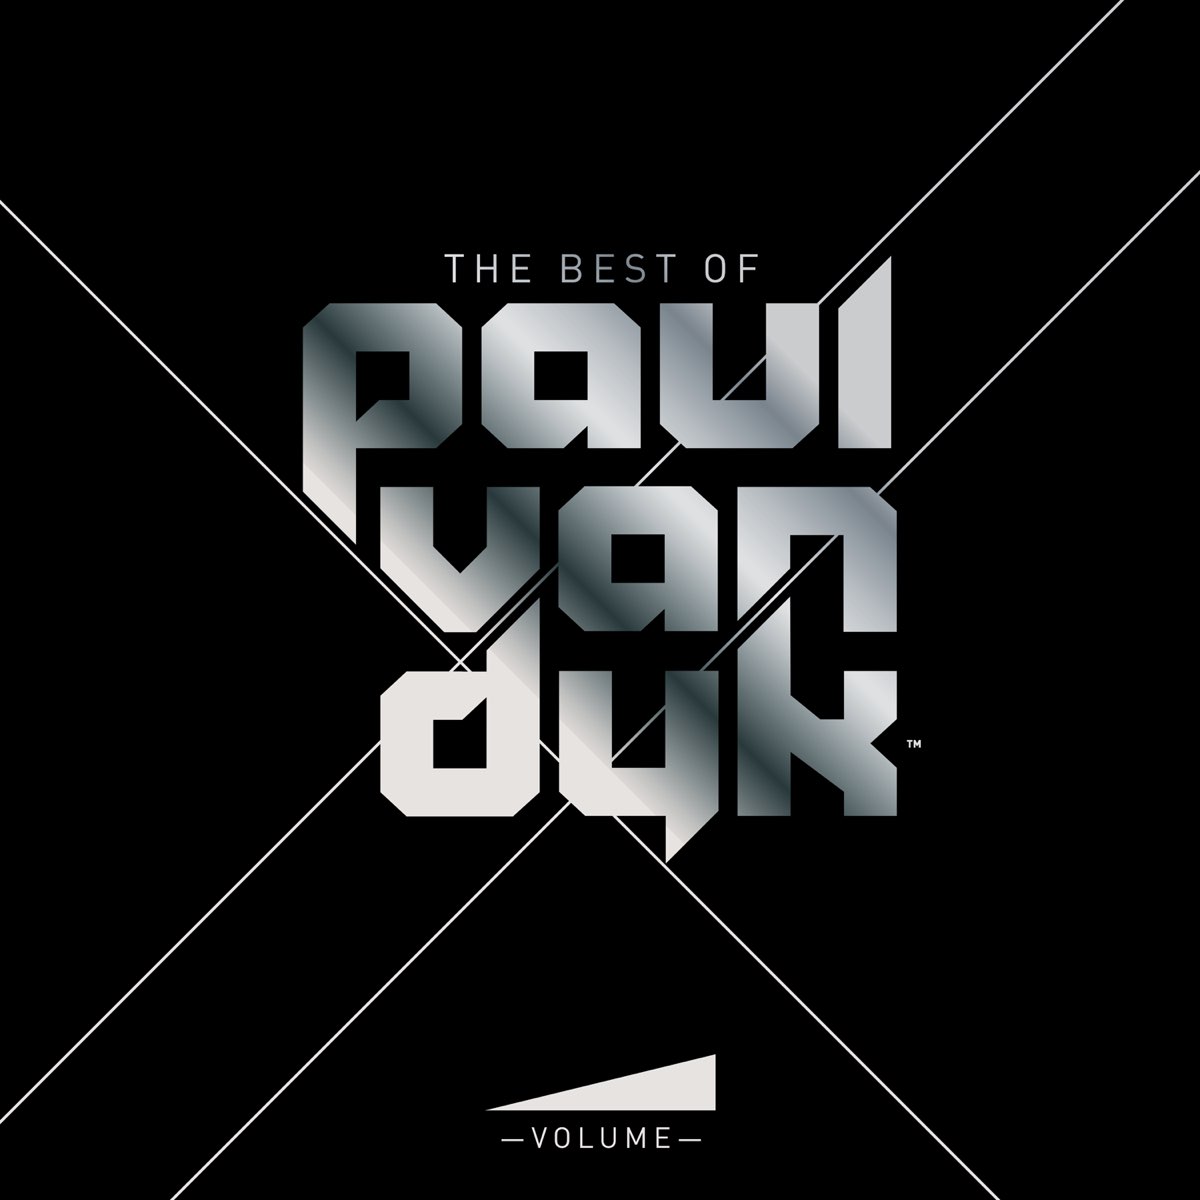 ‎volume The Best Of Paul Van Dyk Mixed Album By Paul Van Dyk